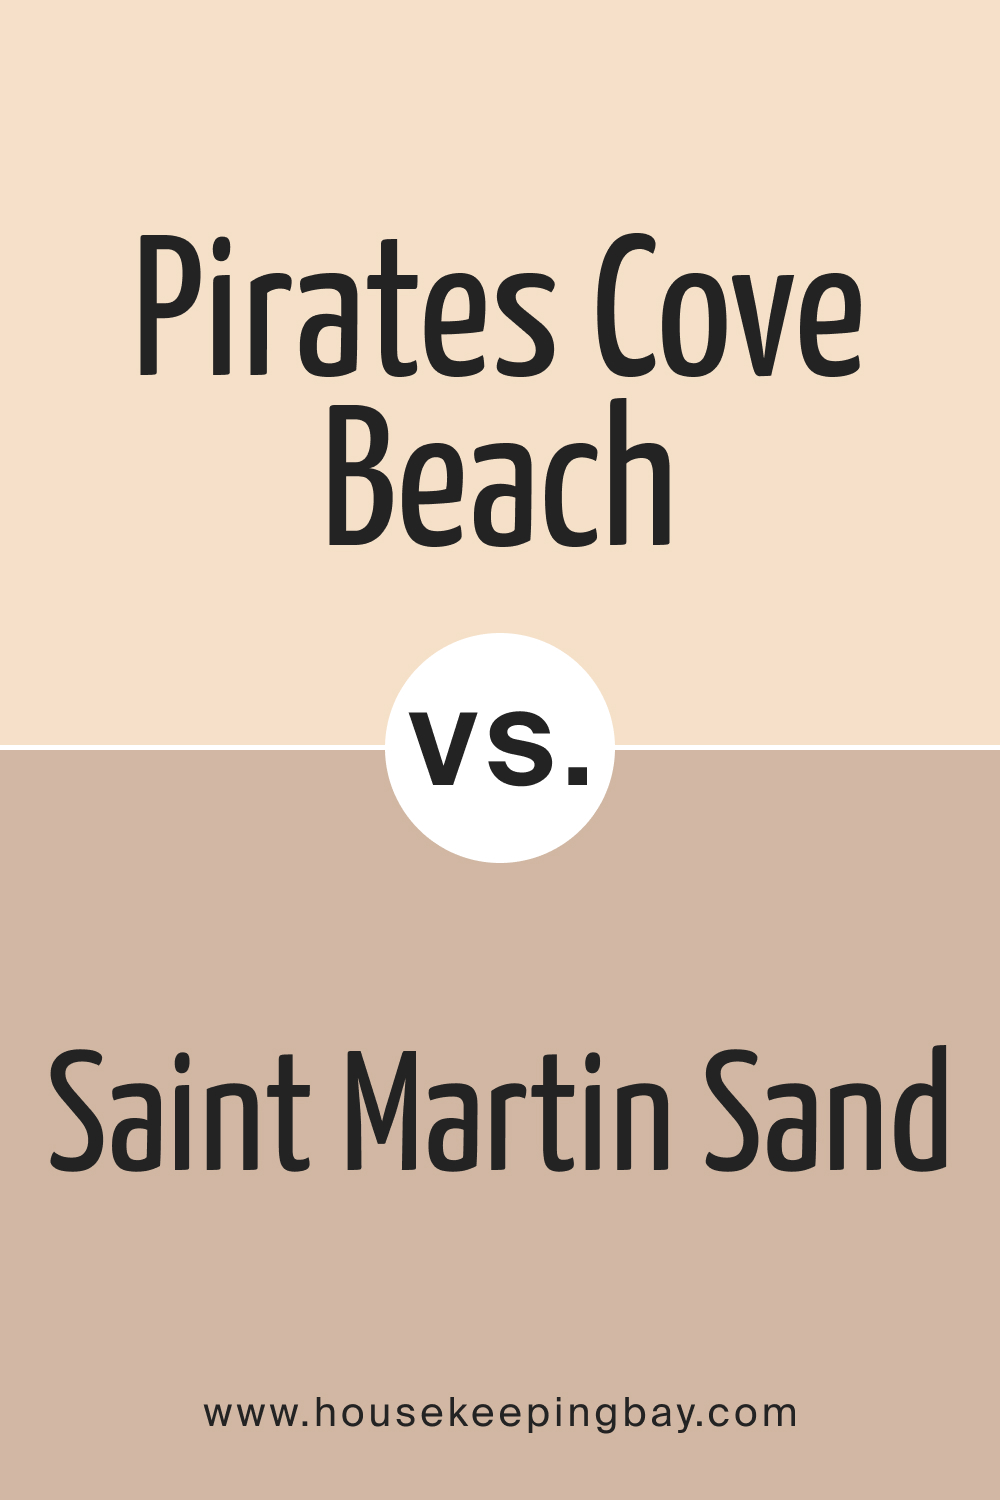 Pirates Cove Beach OC 80 vs. BM Saint Martin Sand 2164 50